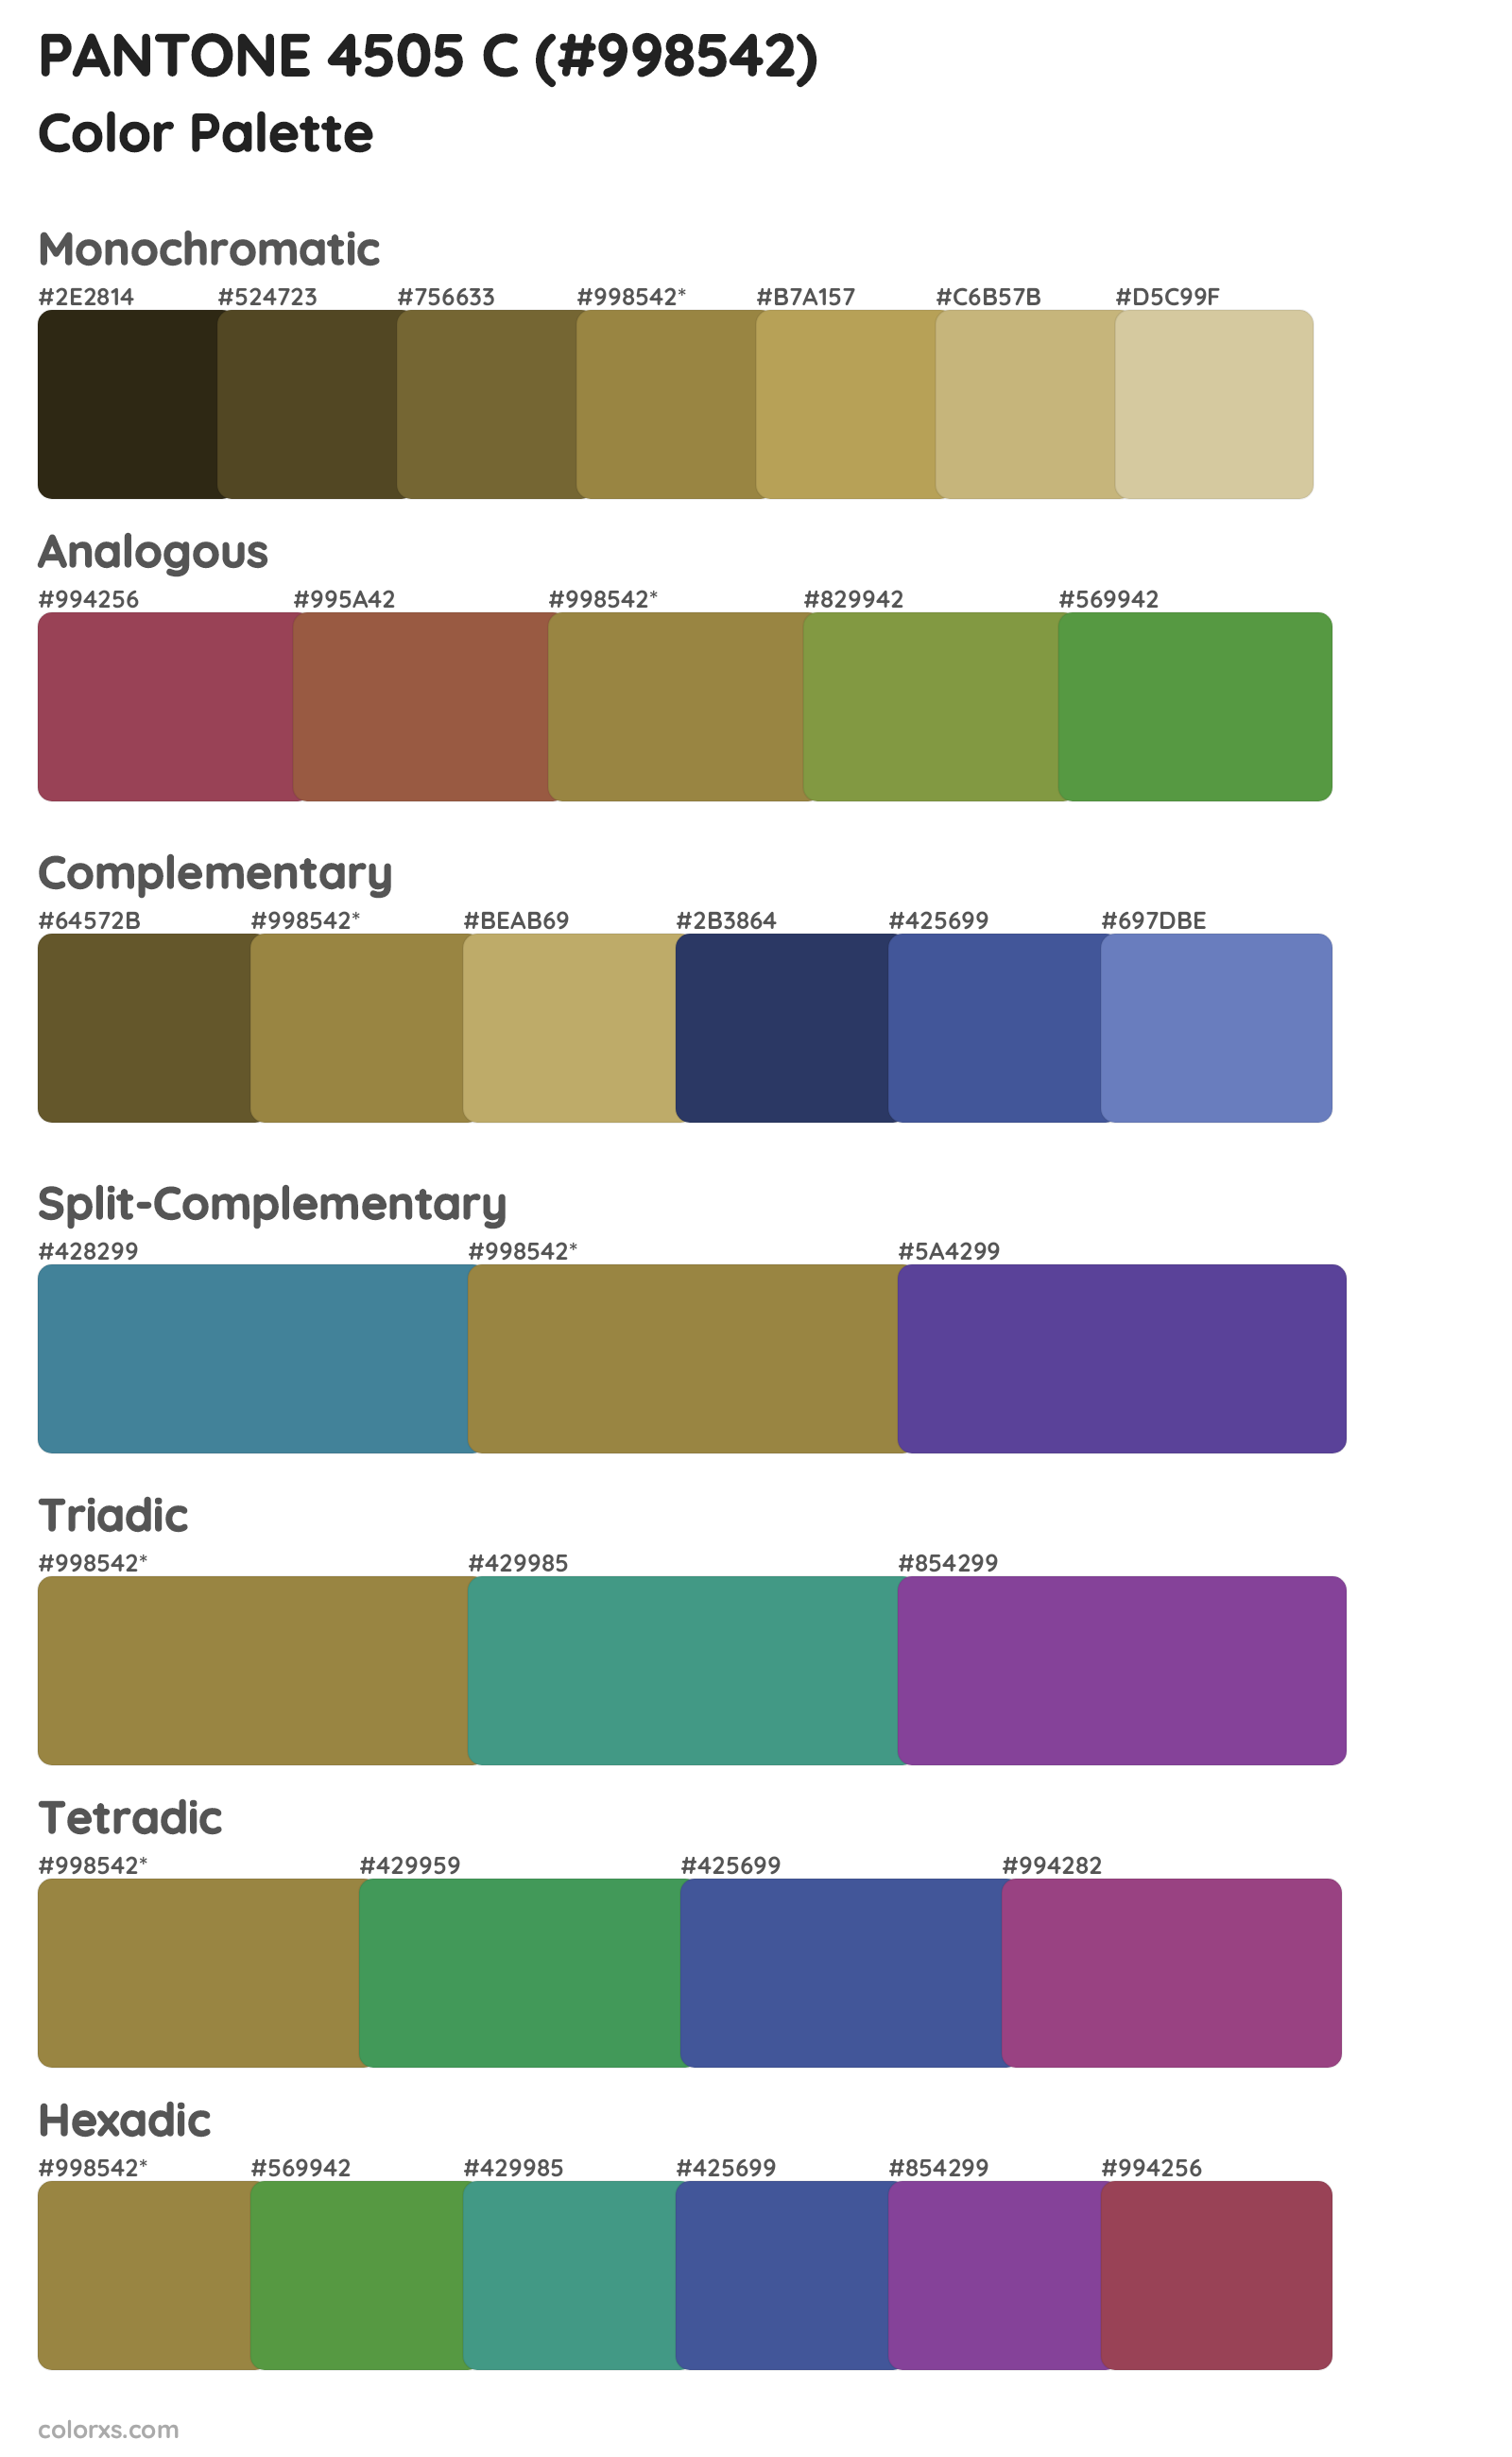 PANTONE 4505 C Color Scheme Palettes